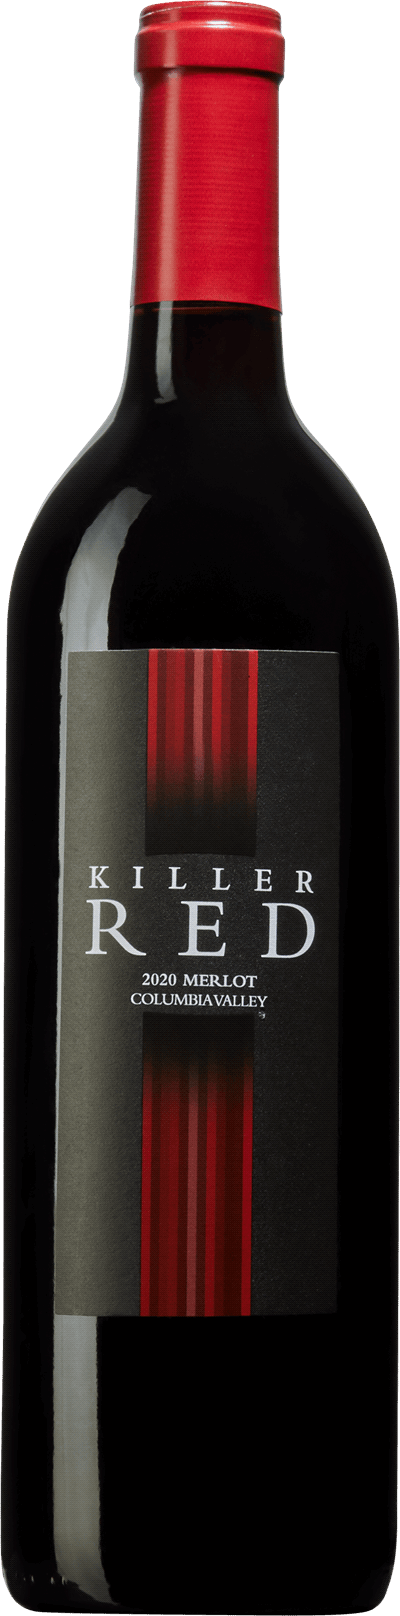 Killer Red Merlot